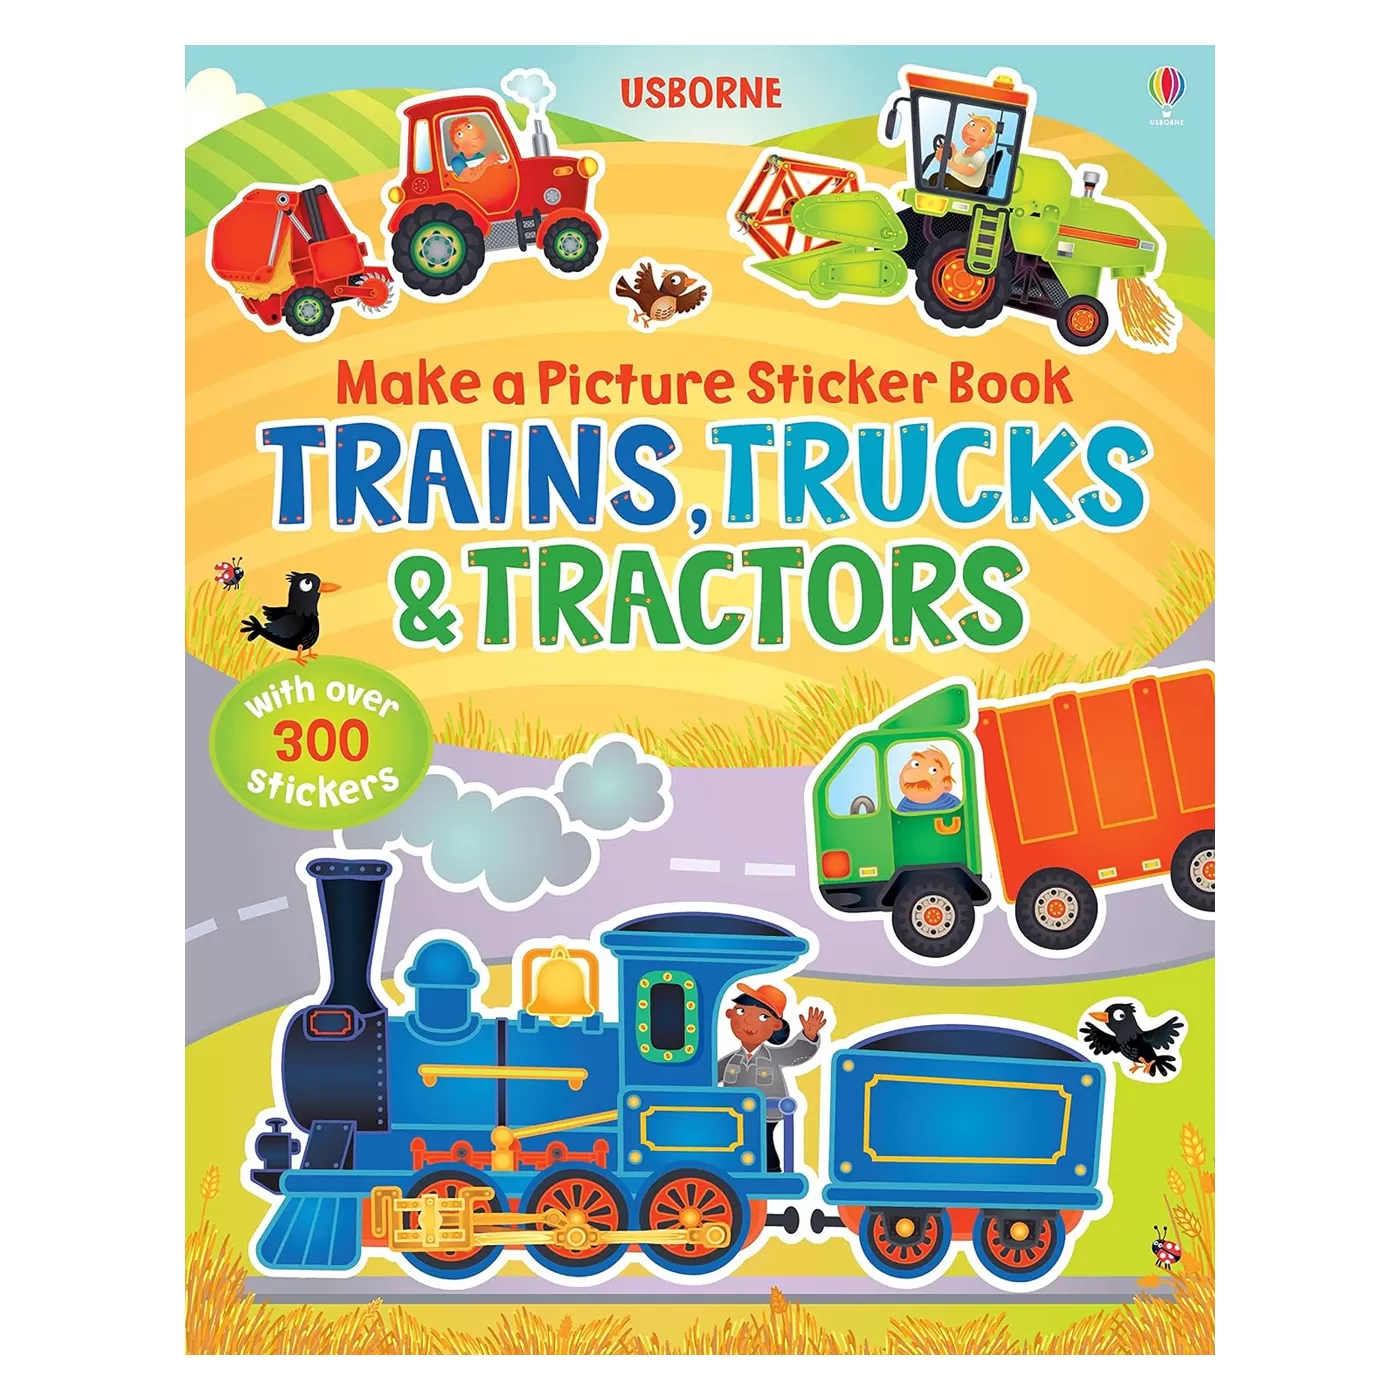  Make a Picture Sticker Book Trains, Trucks & Tractors